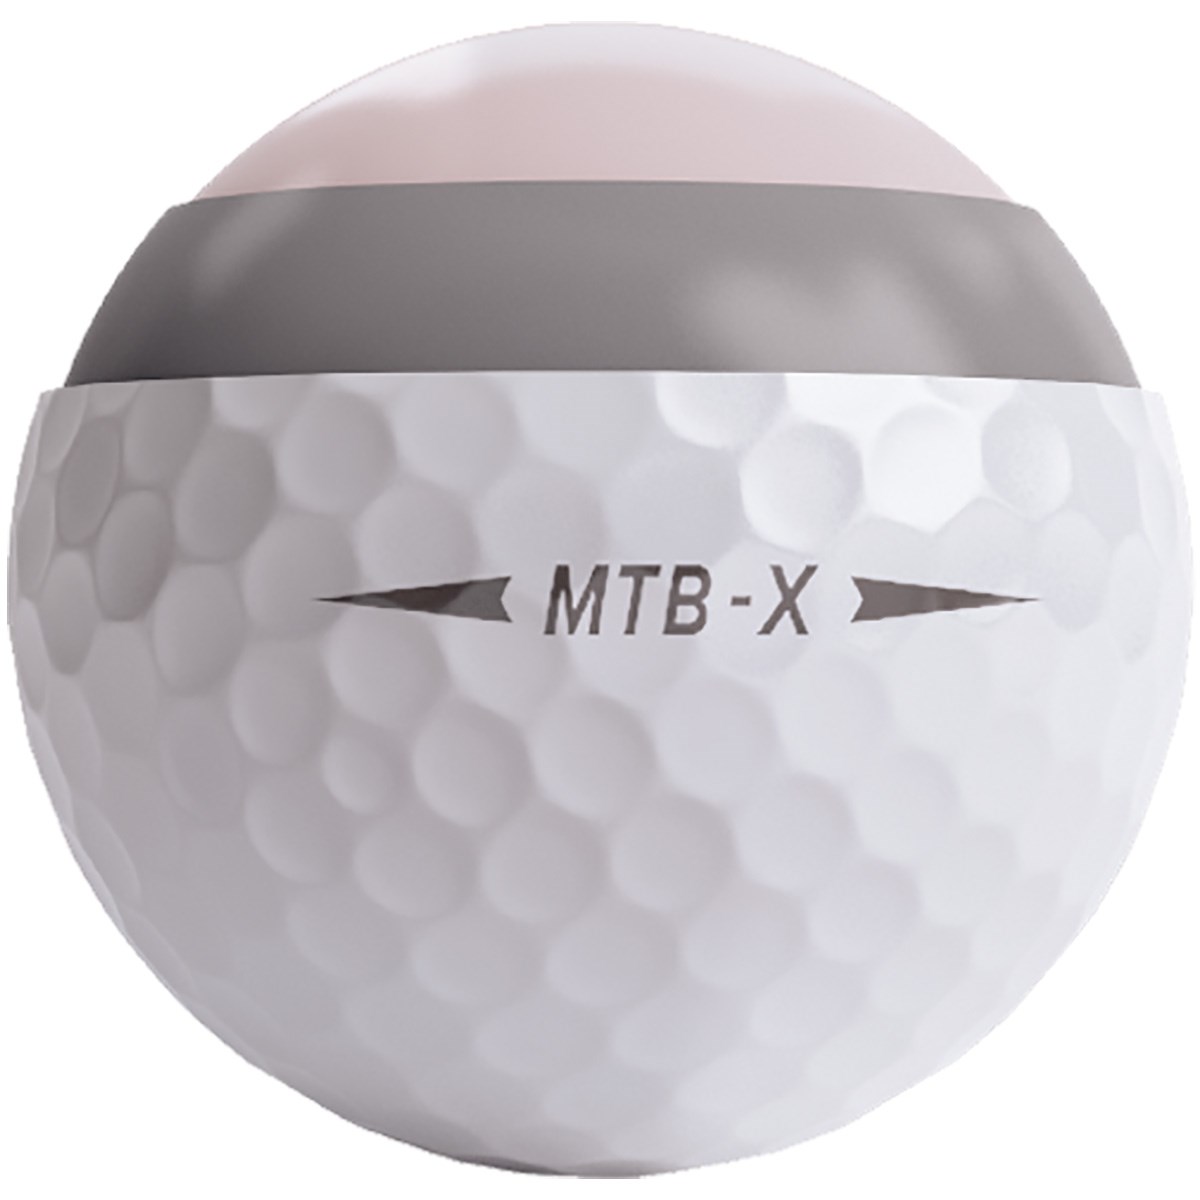 Dショッピング スネルゴルフ Snell Golf Mtb X ボール 5ダースセット 5ダース 60個入り ホワイト カテゴリ ゴルフボールの販売できる商品 Gdoゴルフショップ ドコモの通販サイト